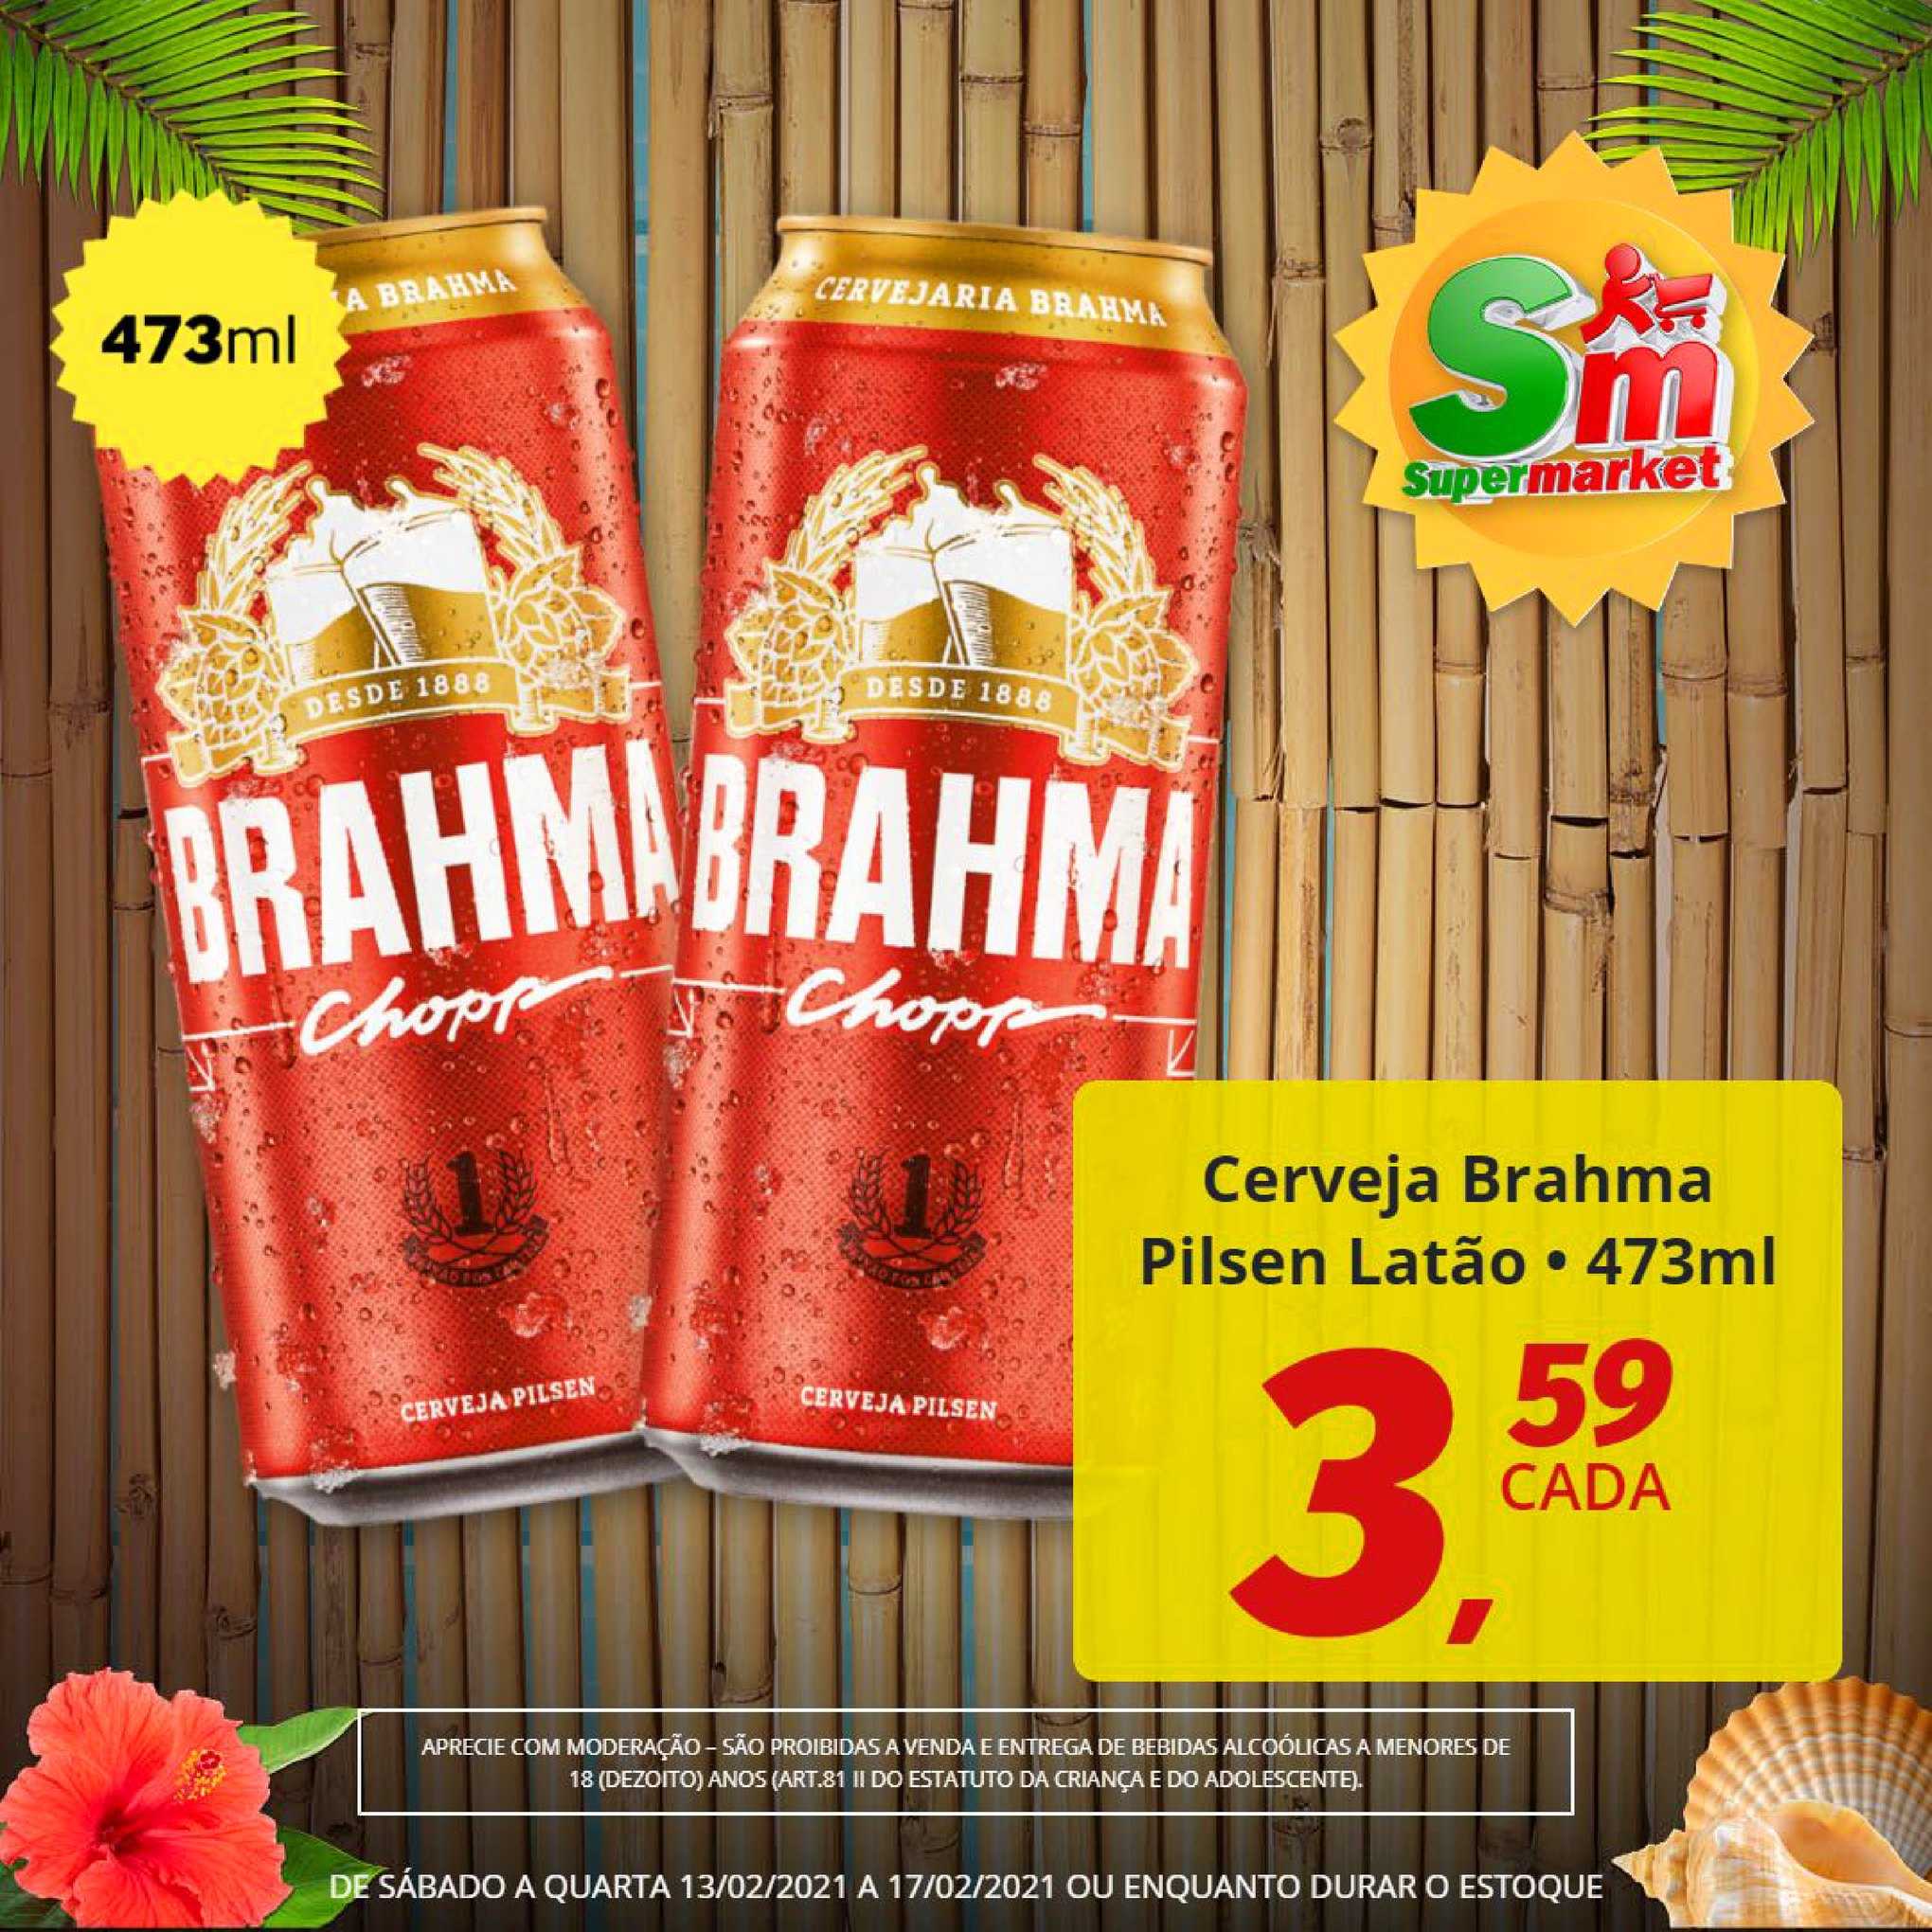 Rede Supermarket Cerveja Brahma Pilsen Latão